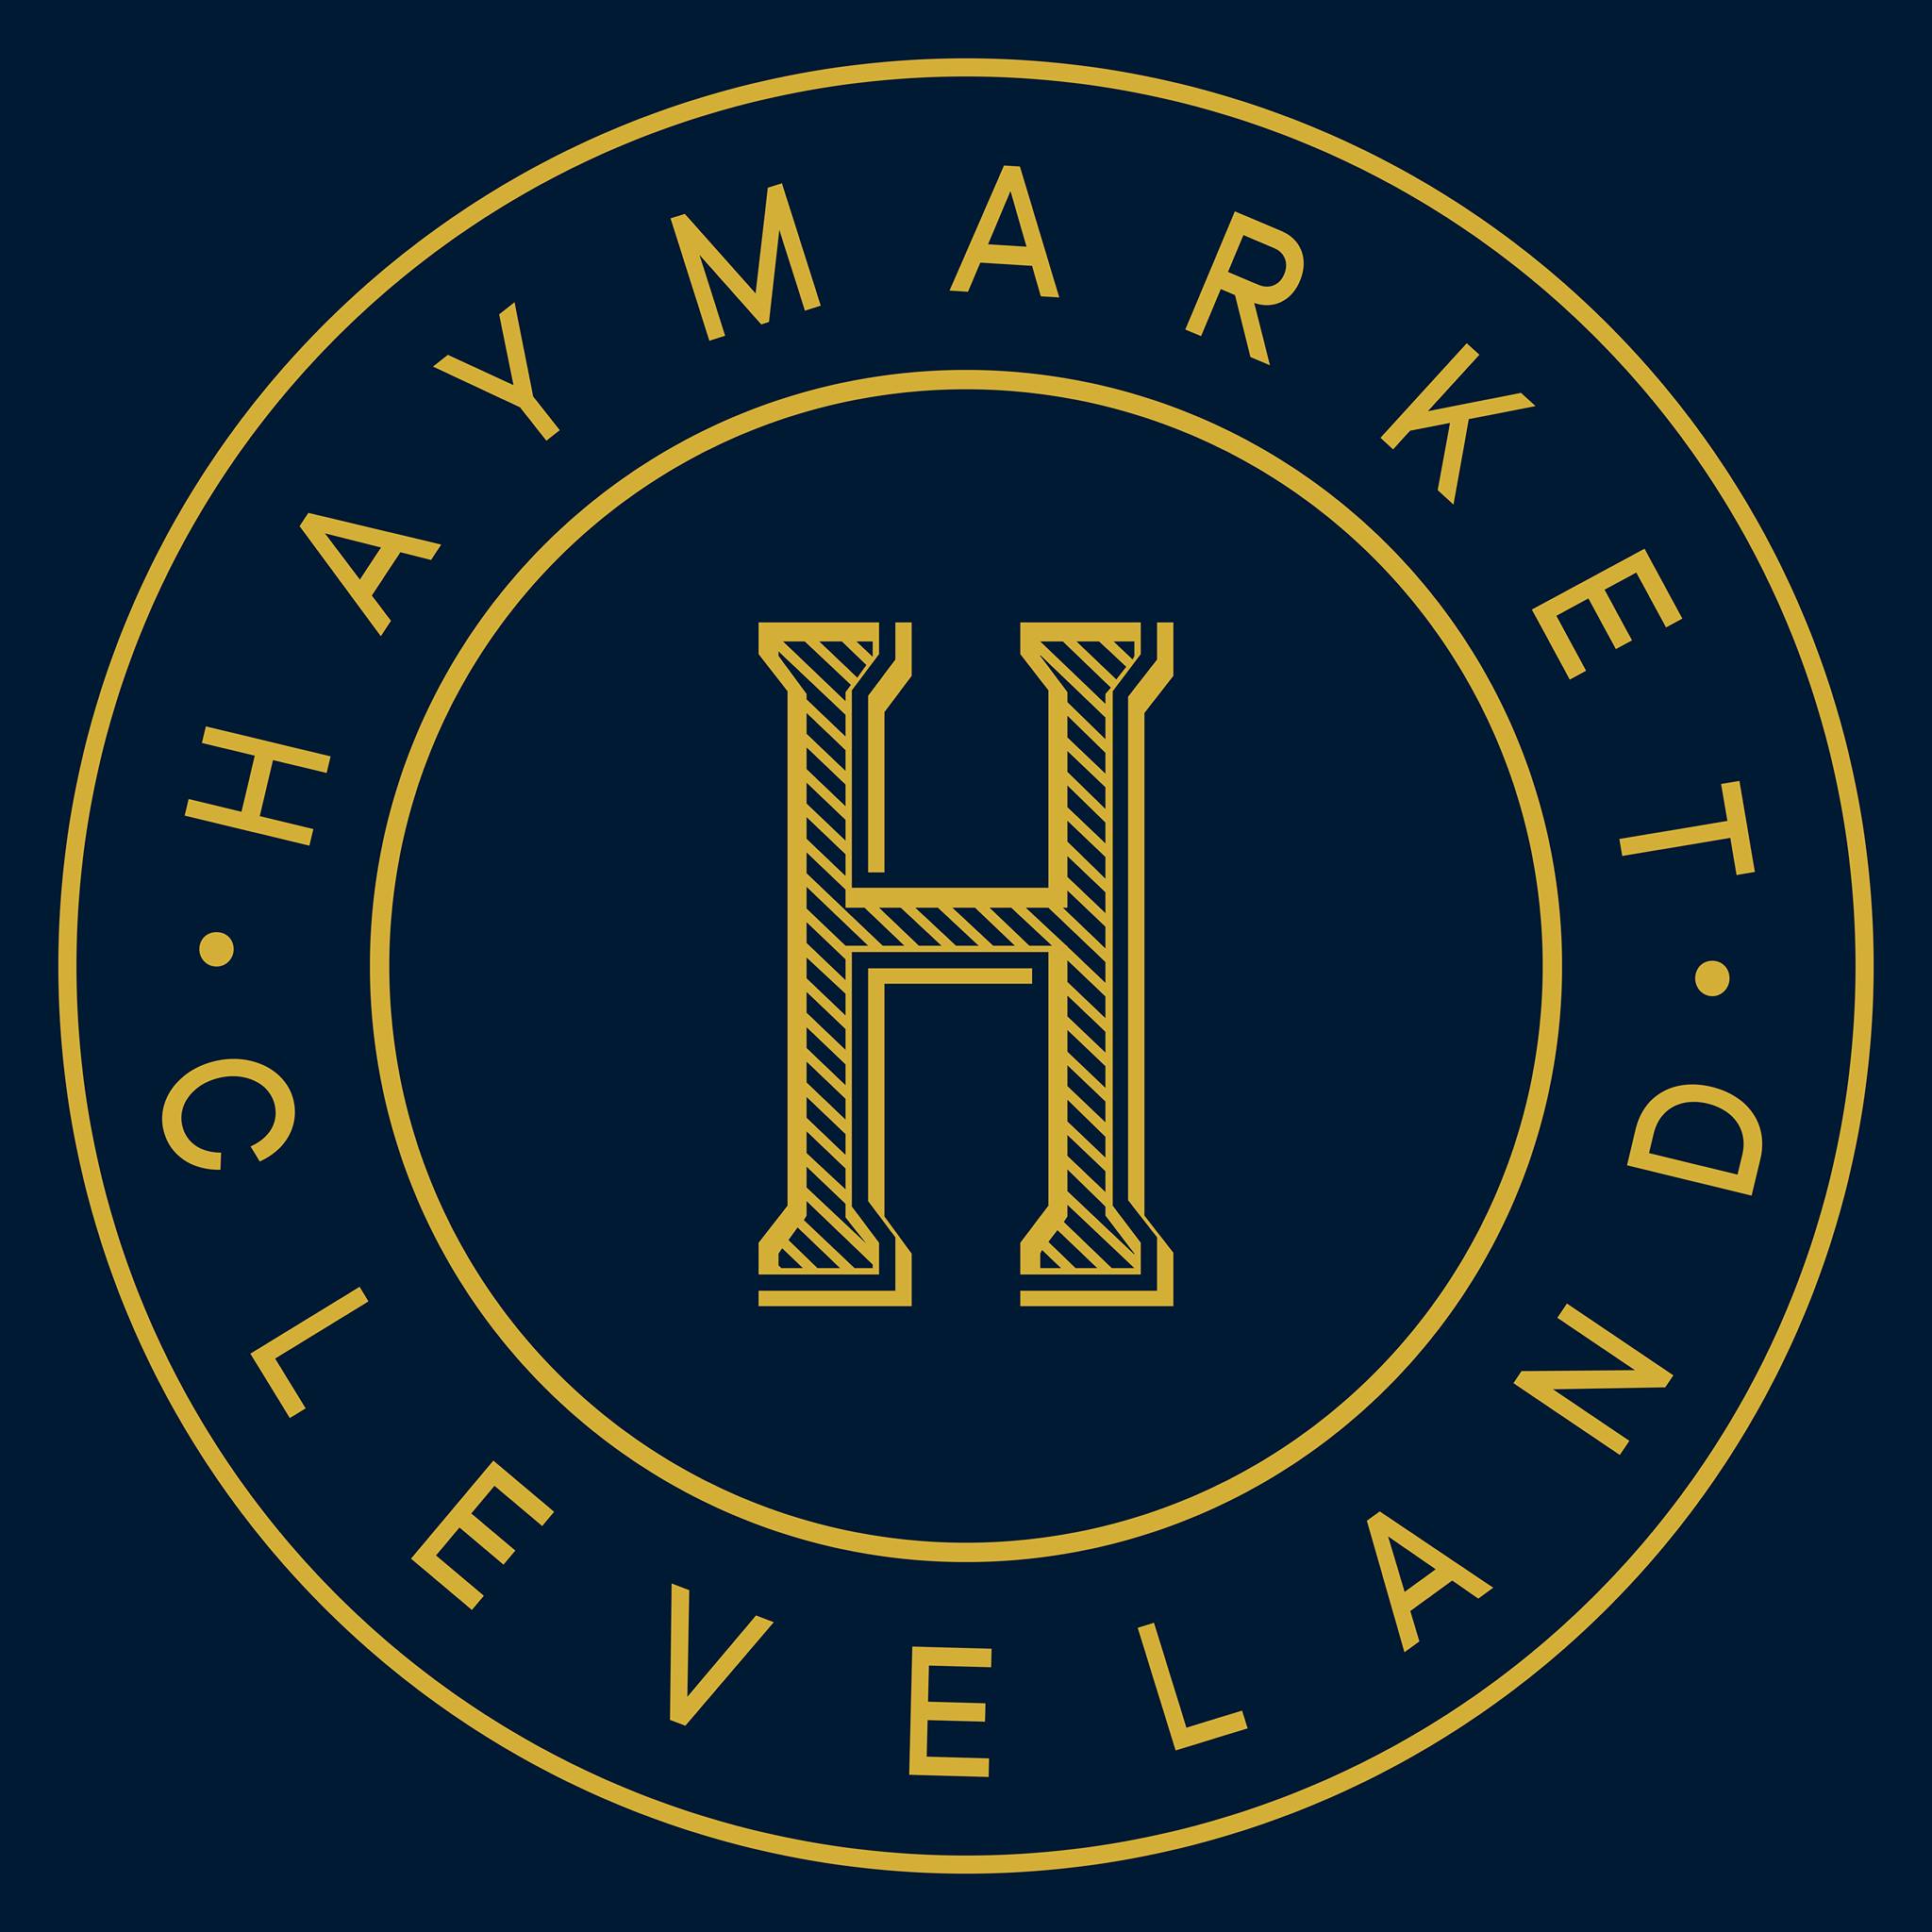 Company logo of Haymarket Pet Company